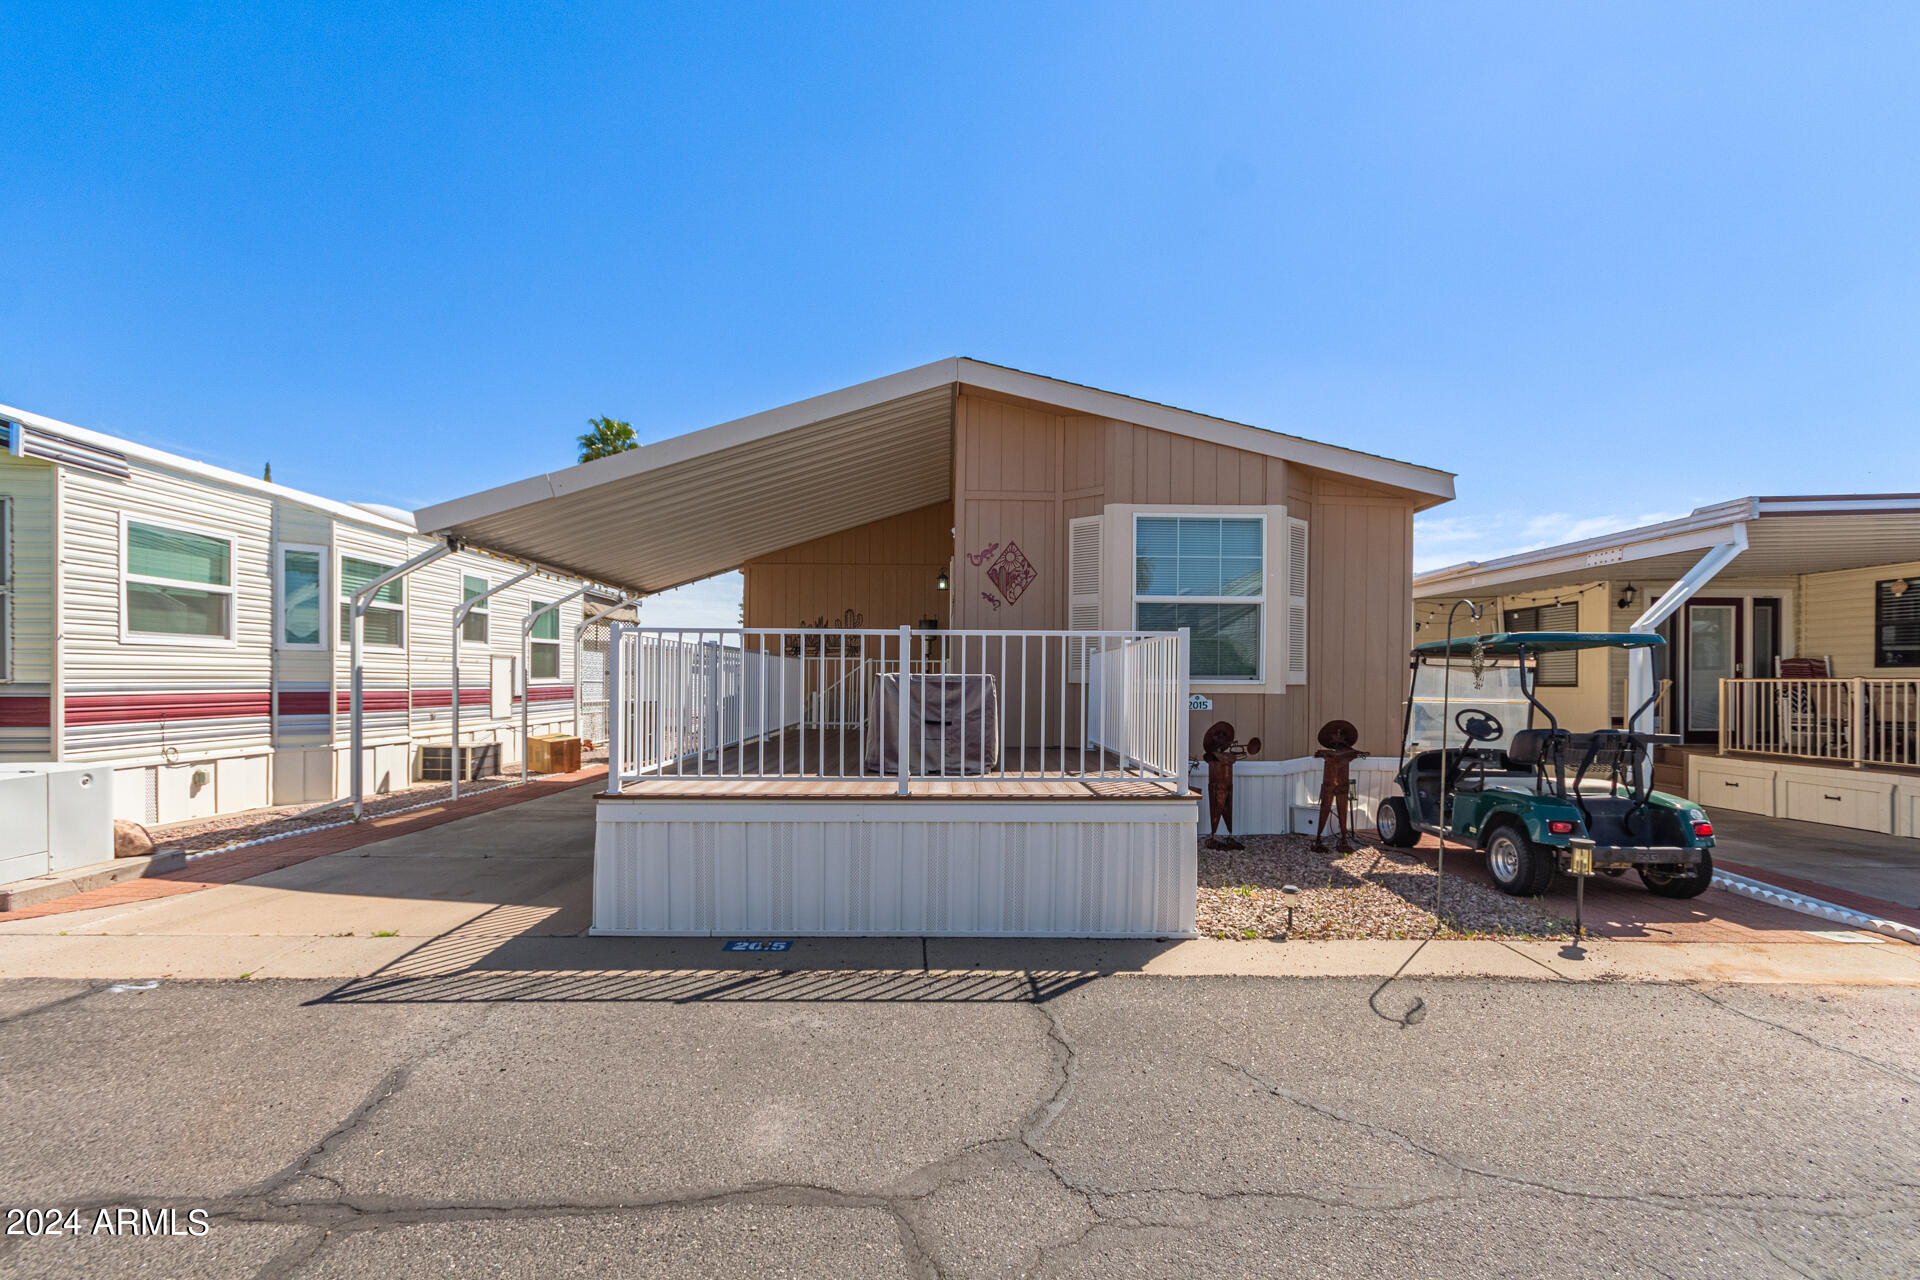 View Mesa, AZ 85207 mobile home